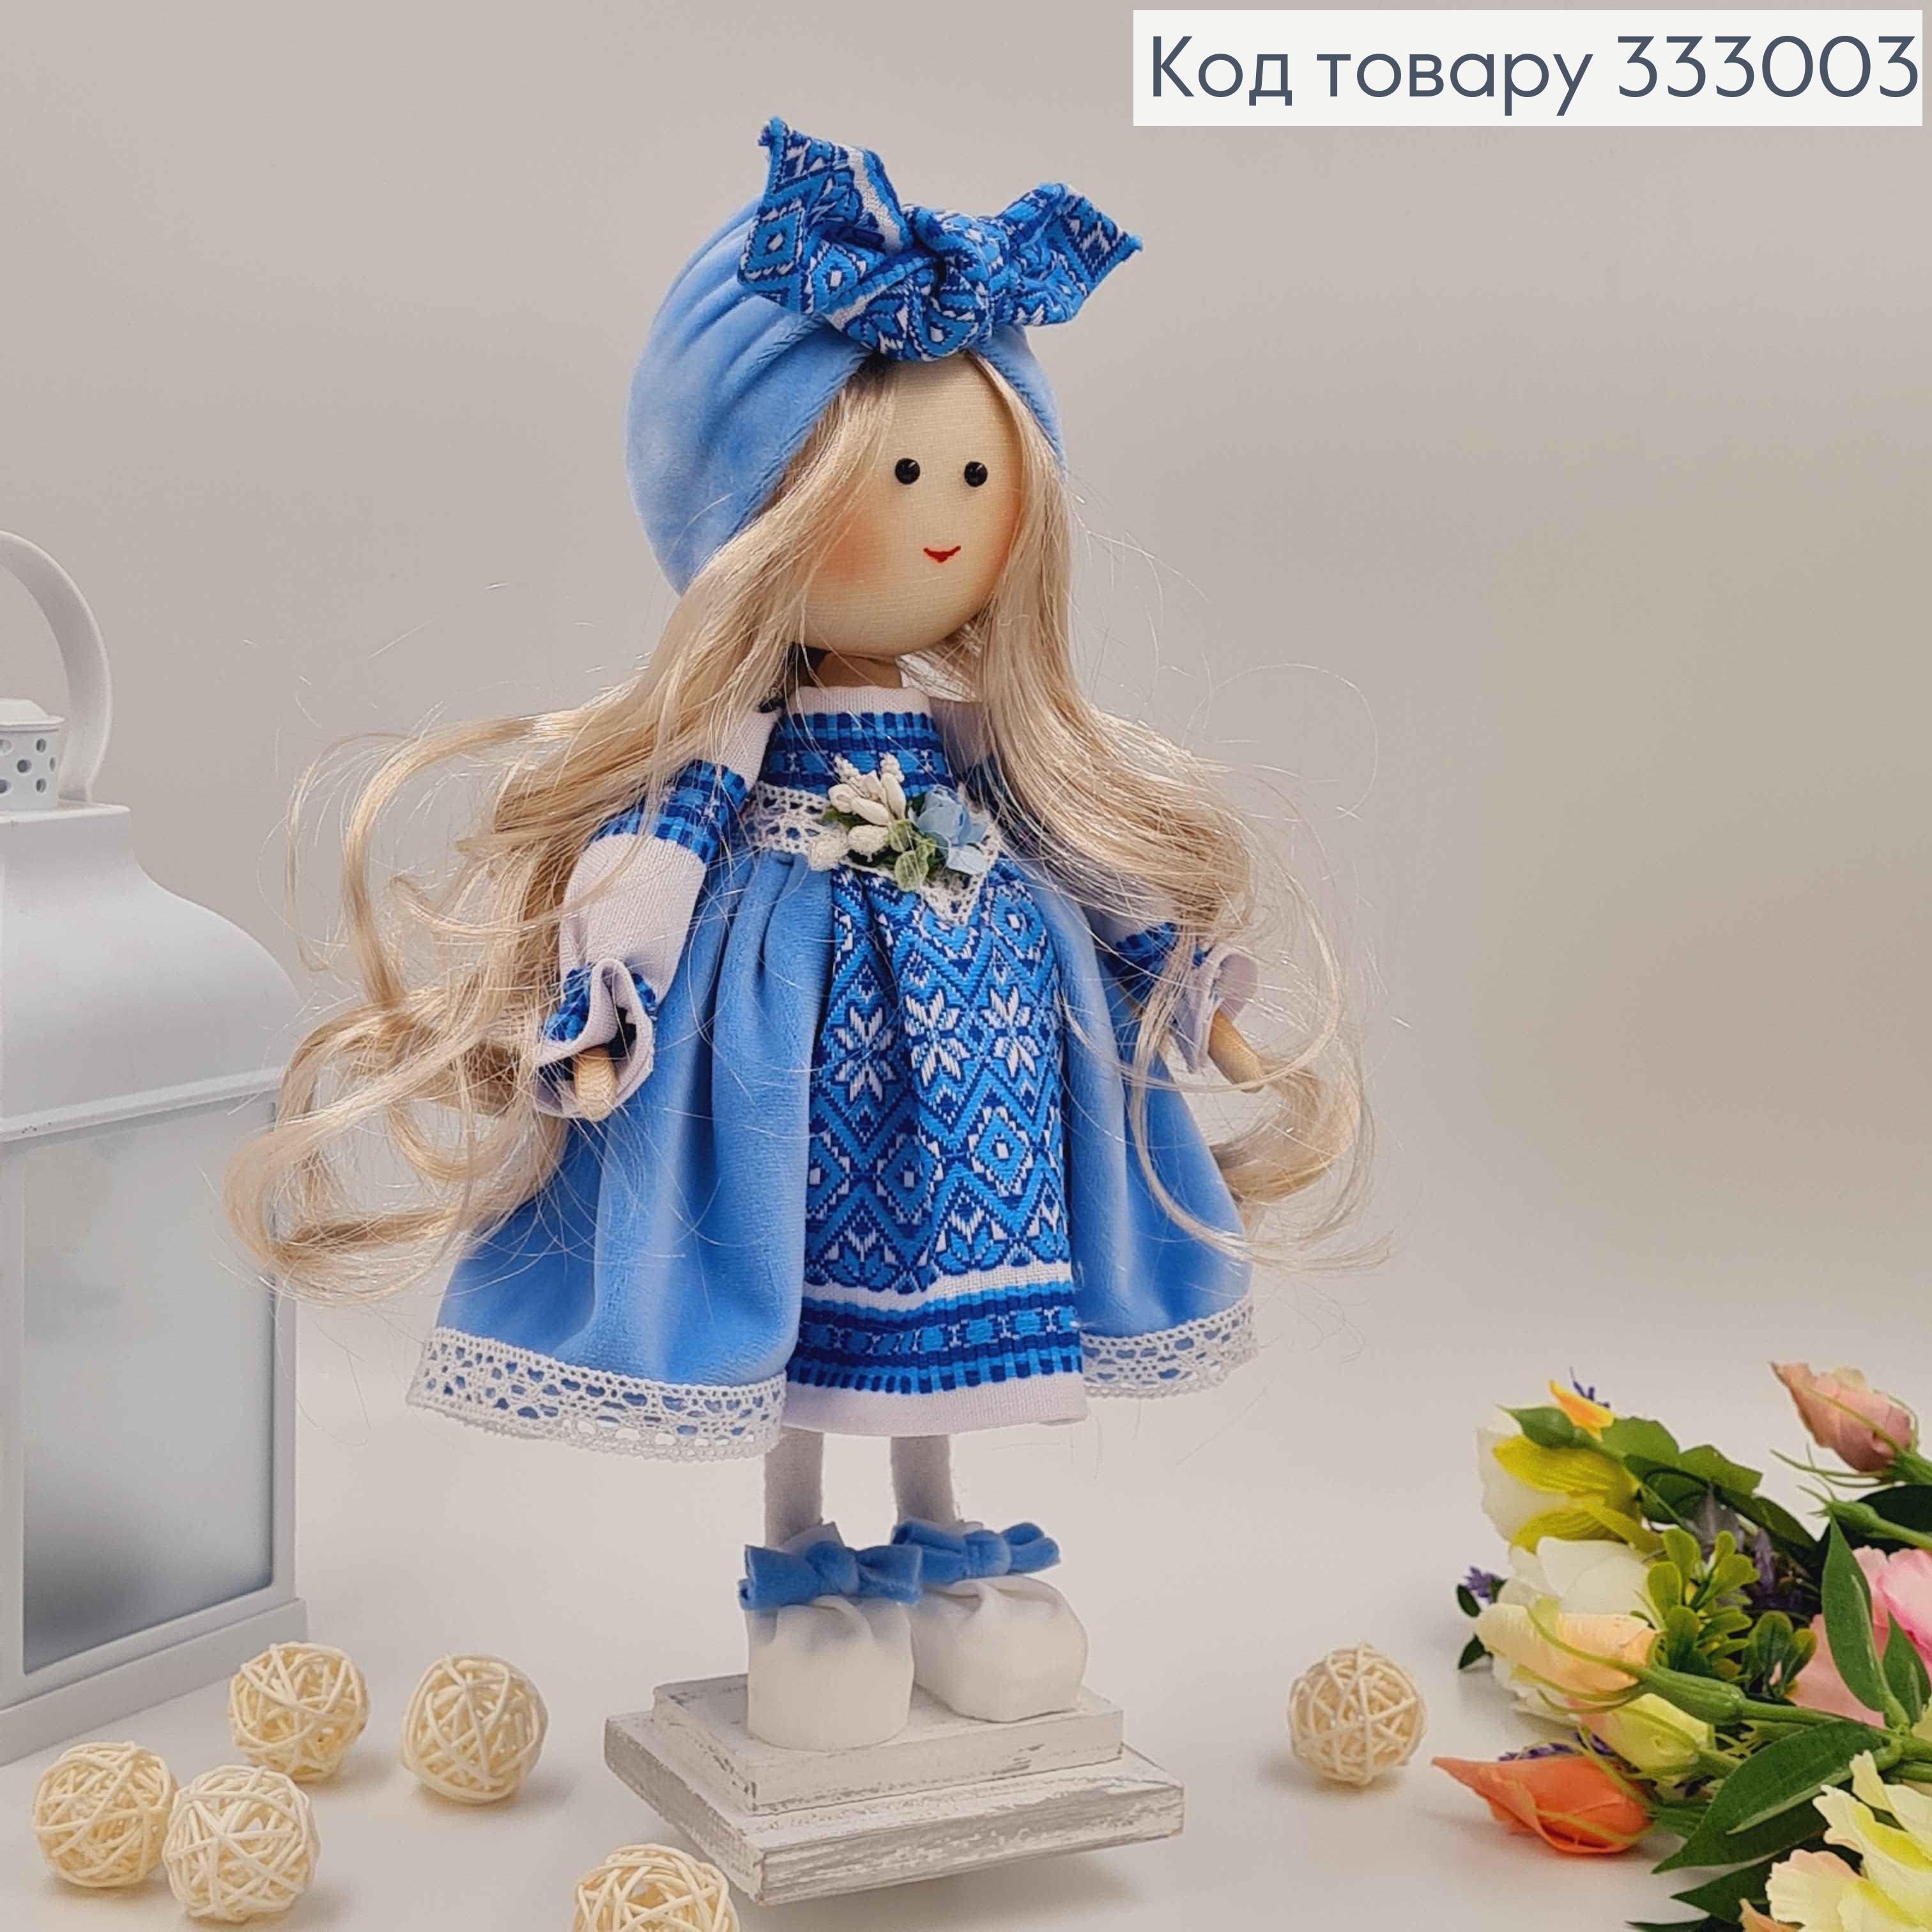 Кукла ДЕВОЧКА, "Солоха блондинка" в голубом платье, высота 32см, ручная работа, Украина 333003 фото 2